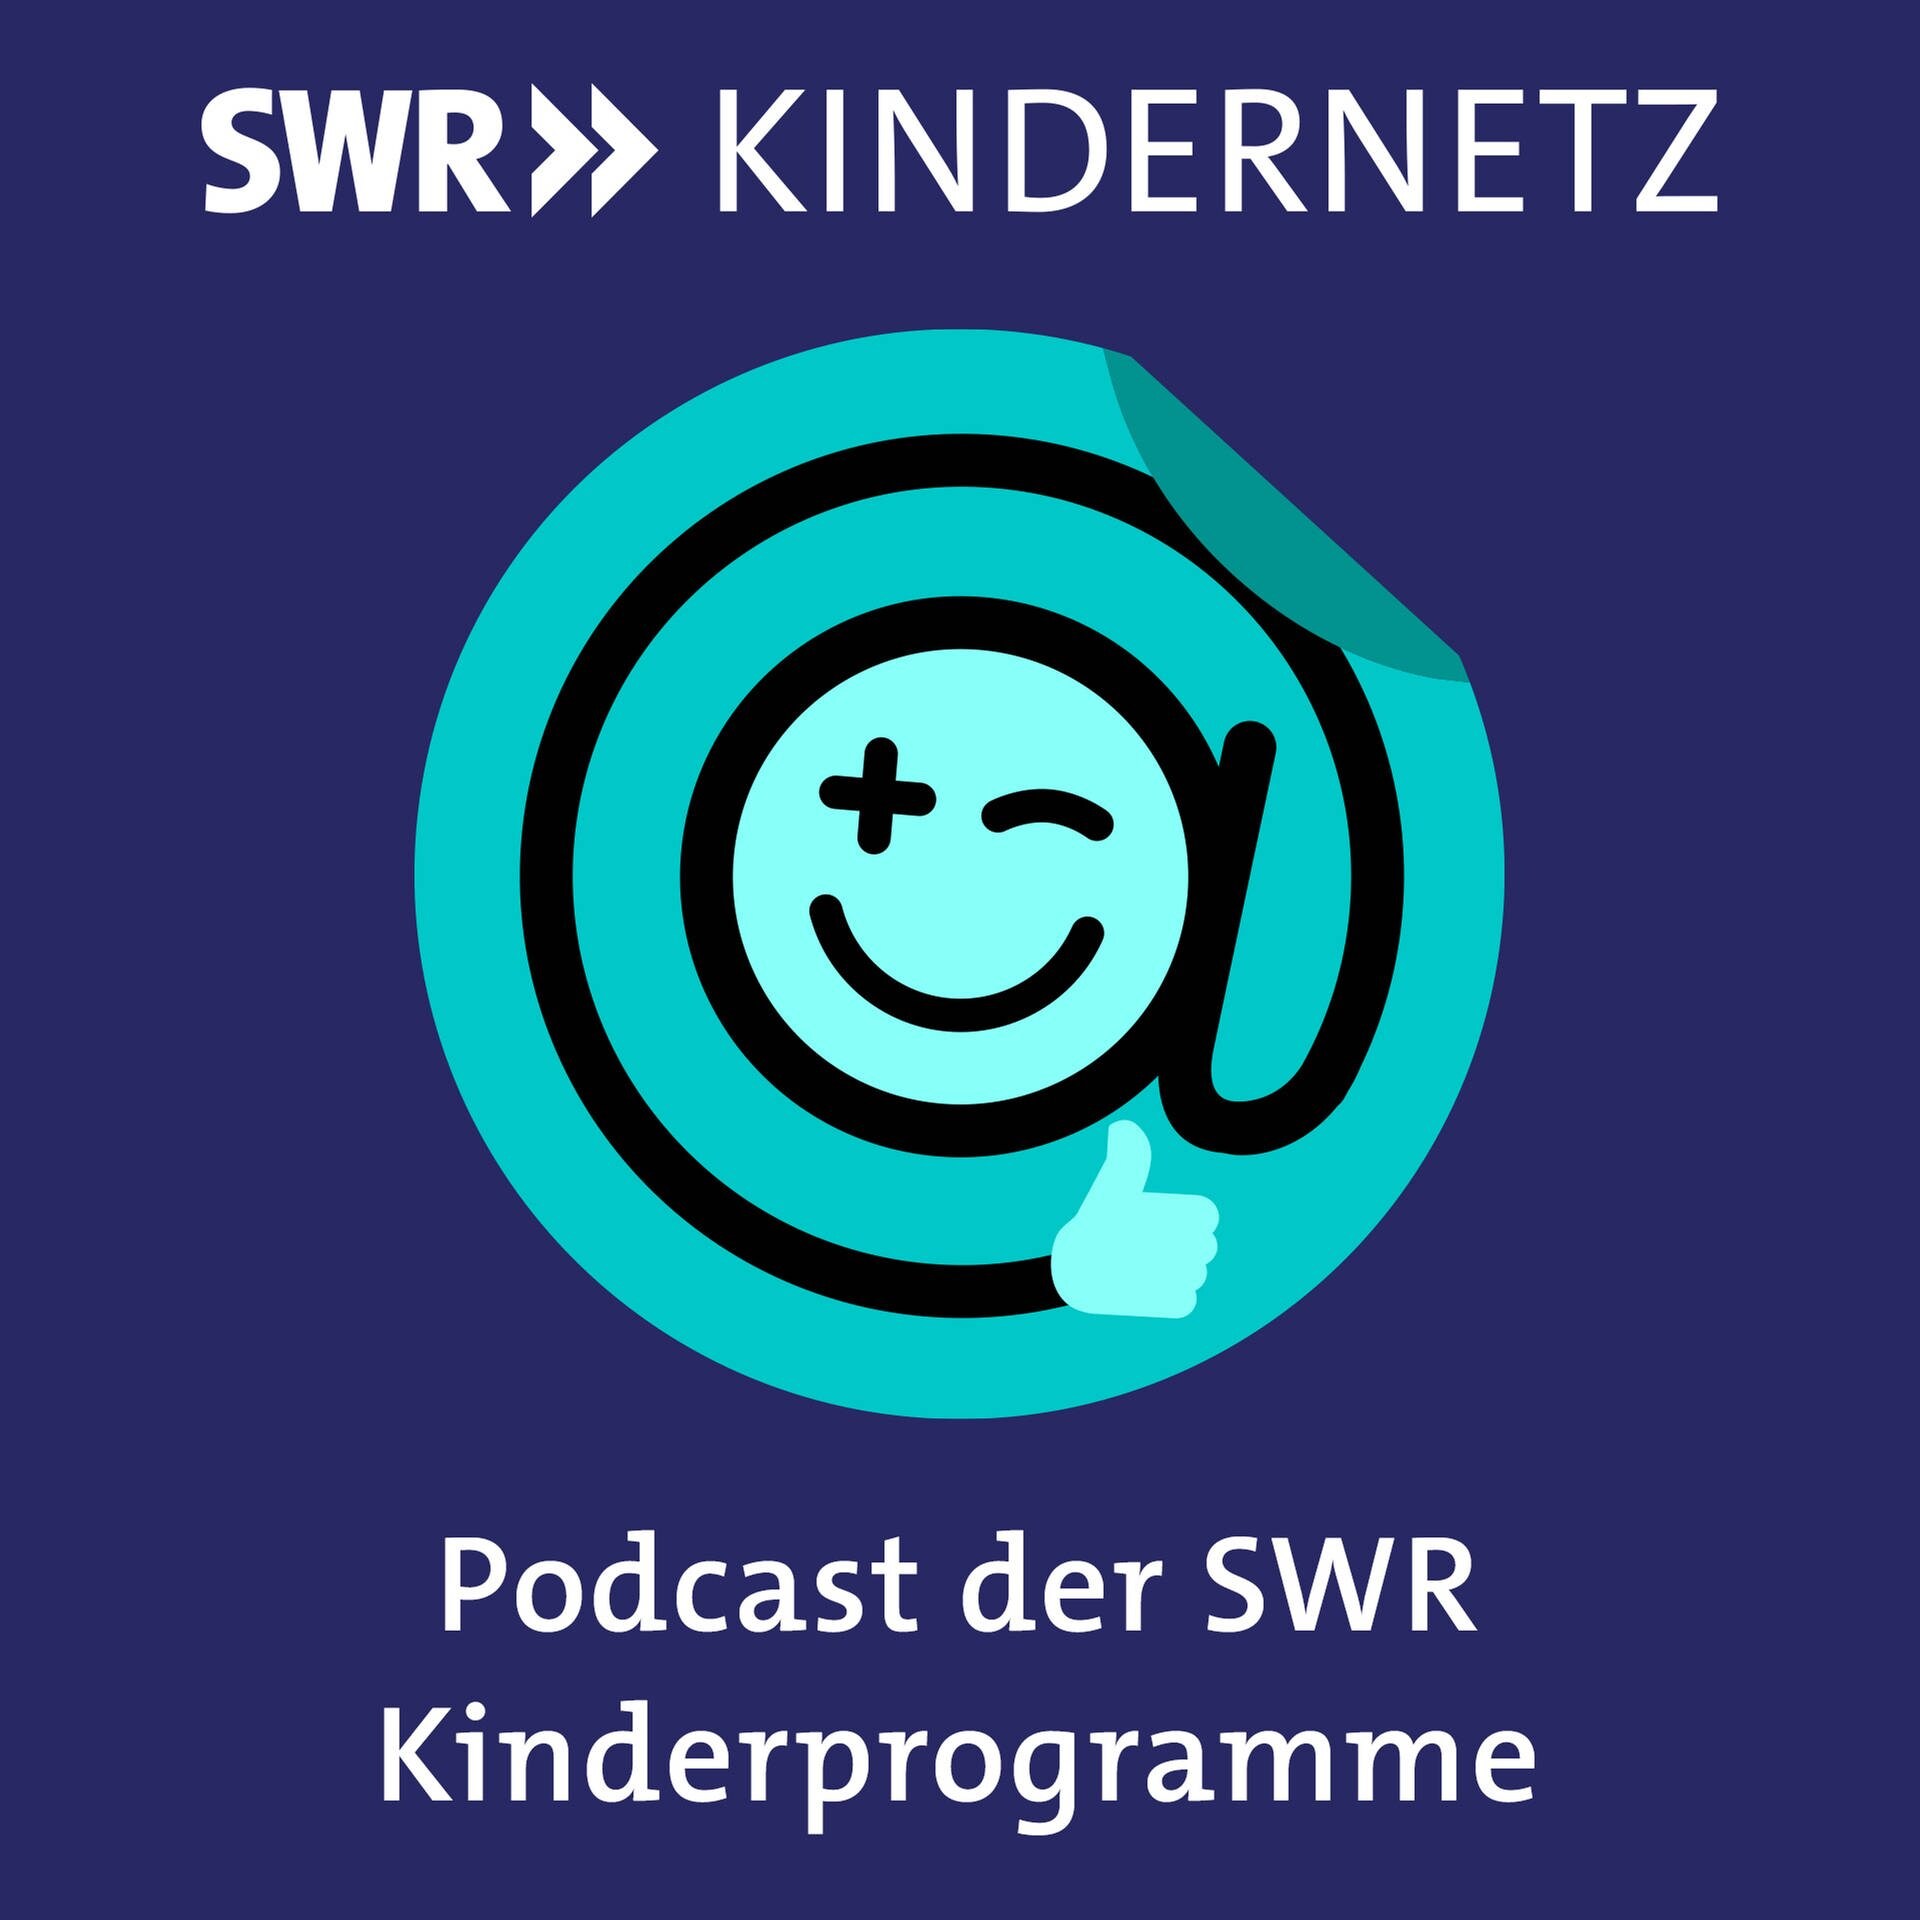 Das Logo SWR Kindernetz mit der Textzeile "Podcast der SWR Kinderprogramme" (Foto: SWR)